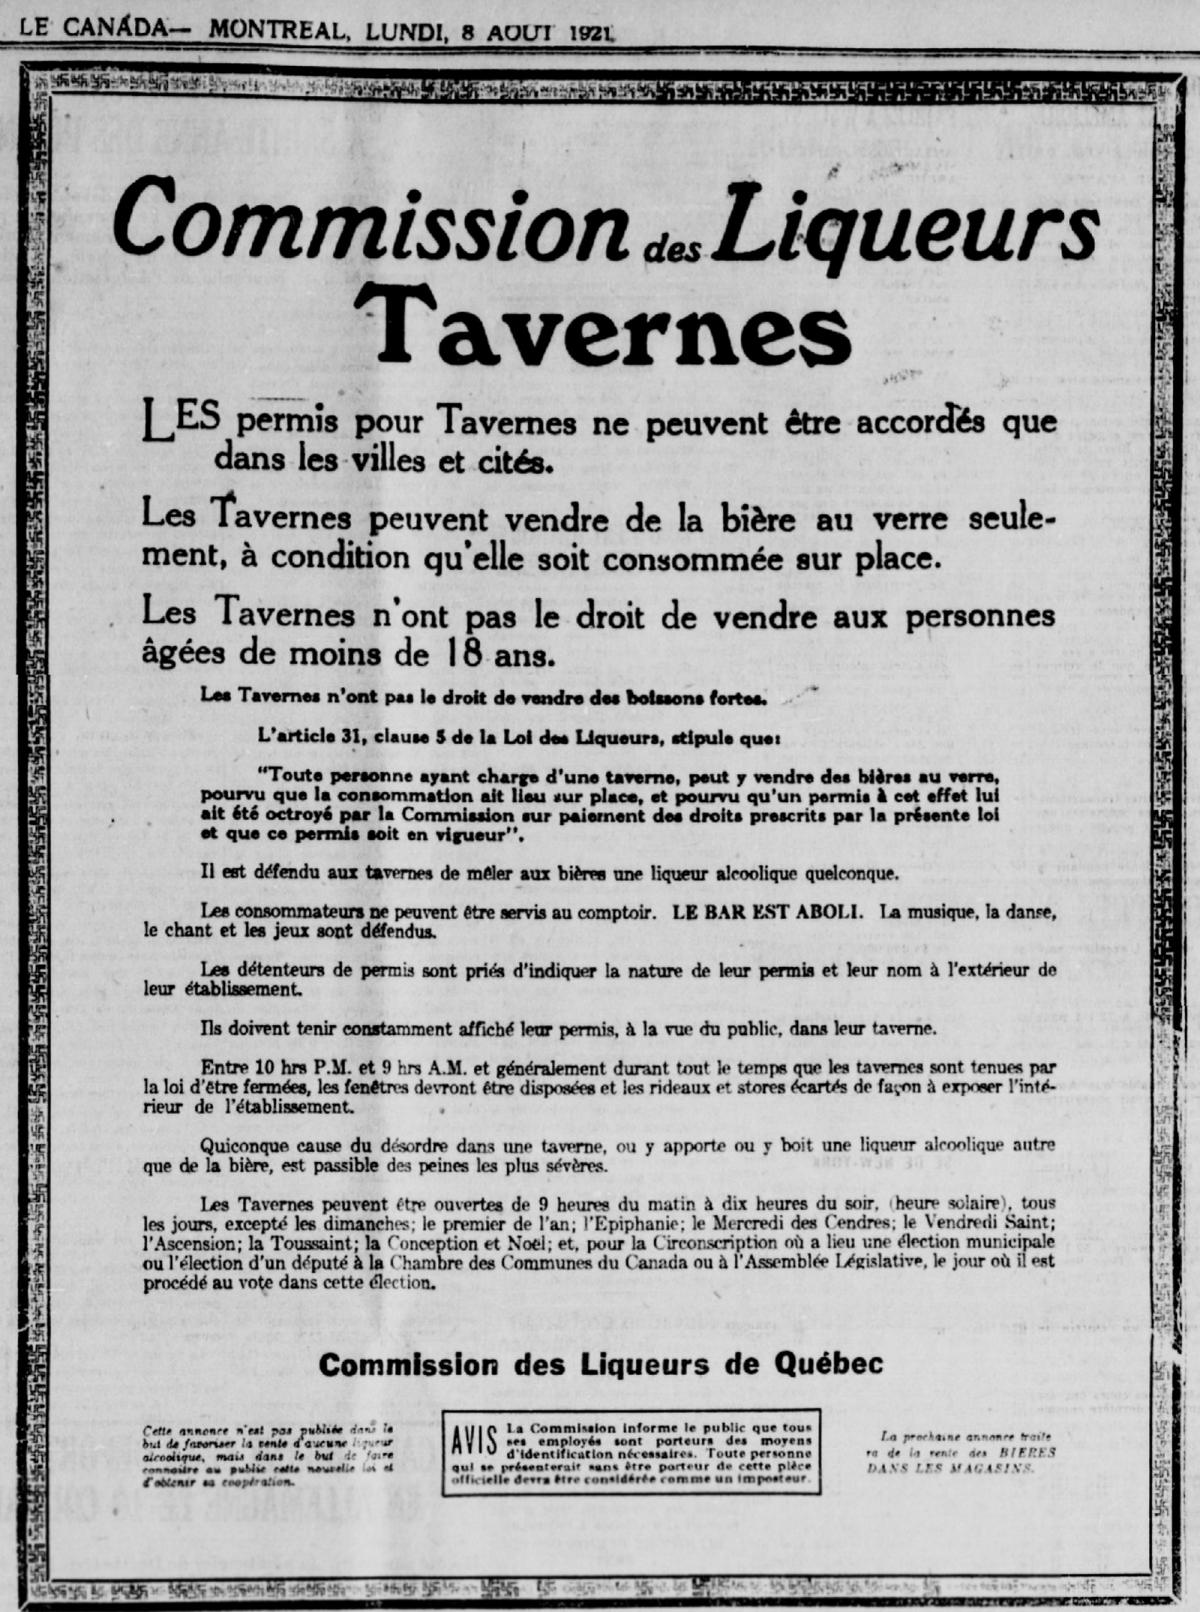 Annonce publiée par la Commission des Liqueurs du Québec concernant les règles à suivre par les taverniers à l’égard de la vente d’alcool.